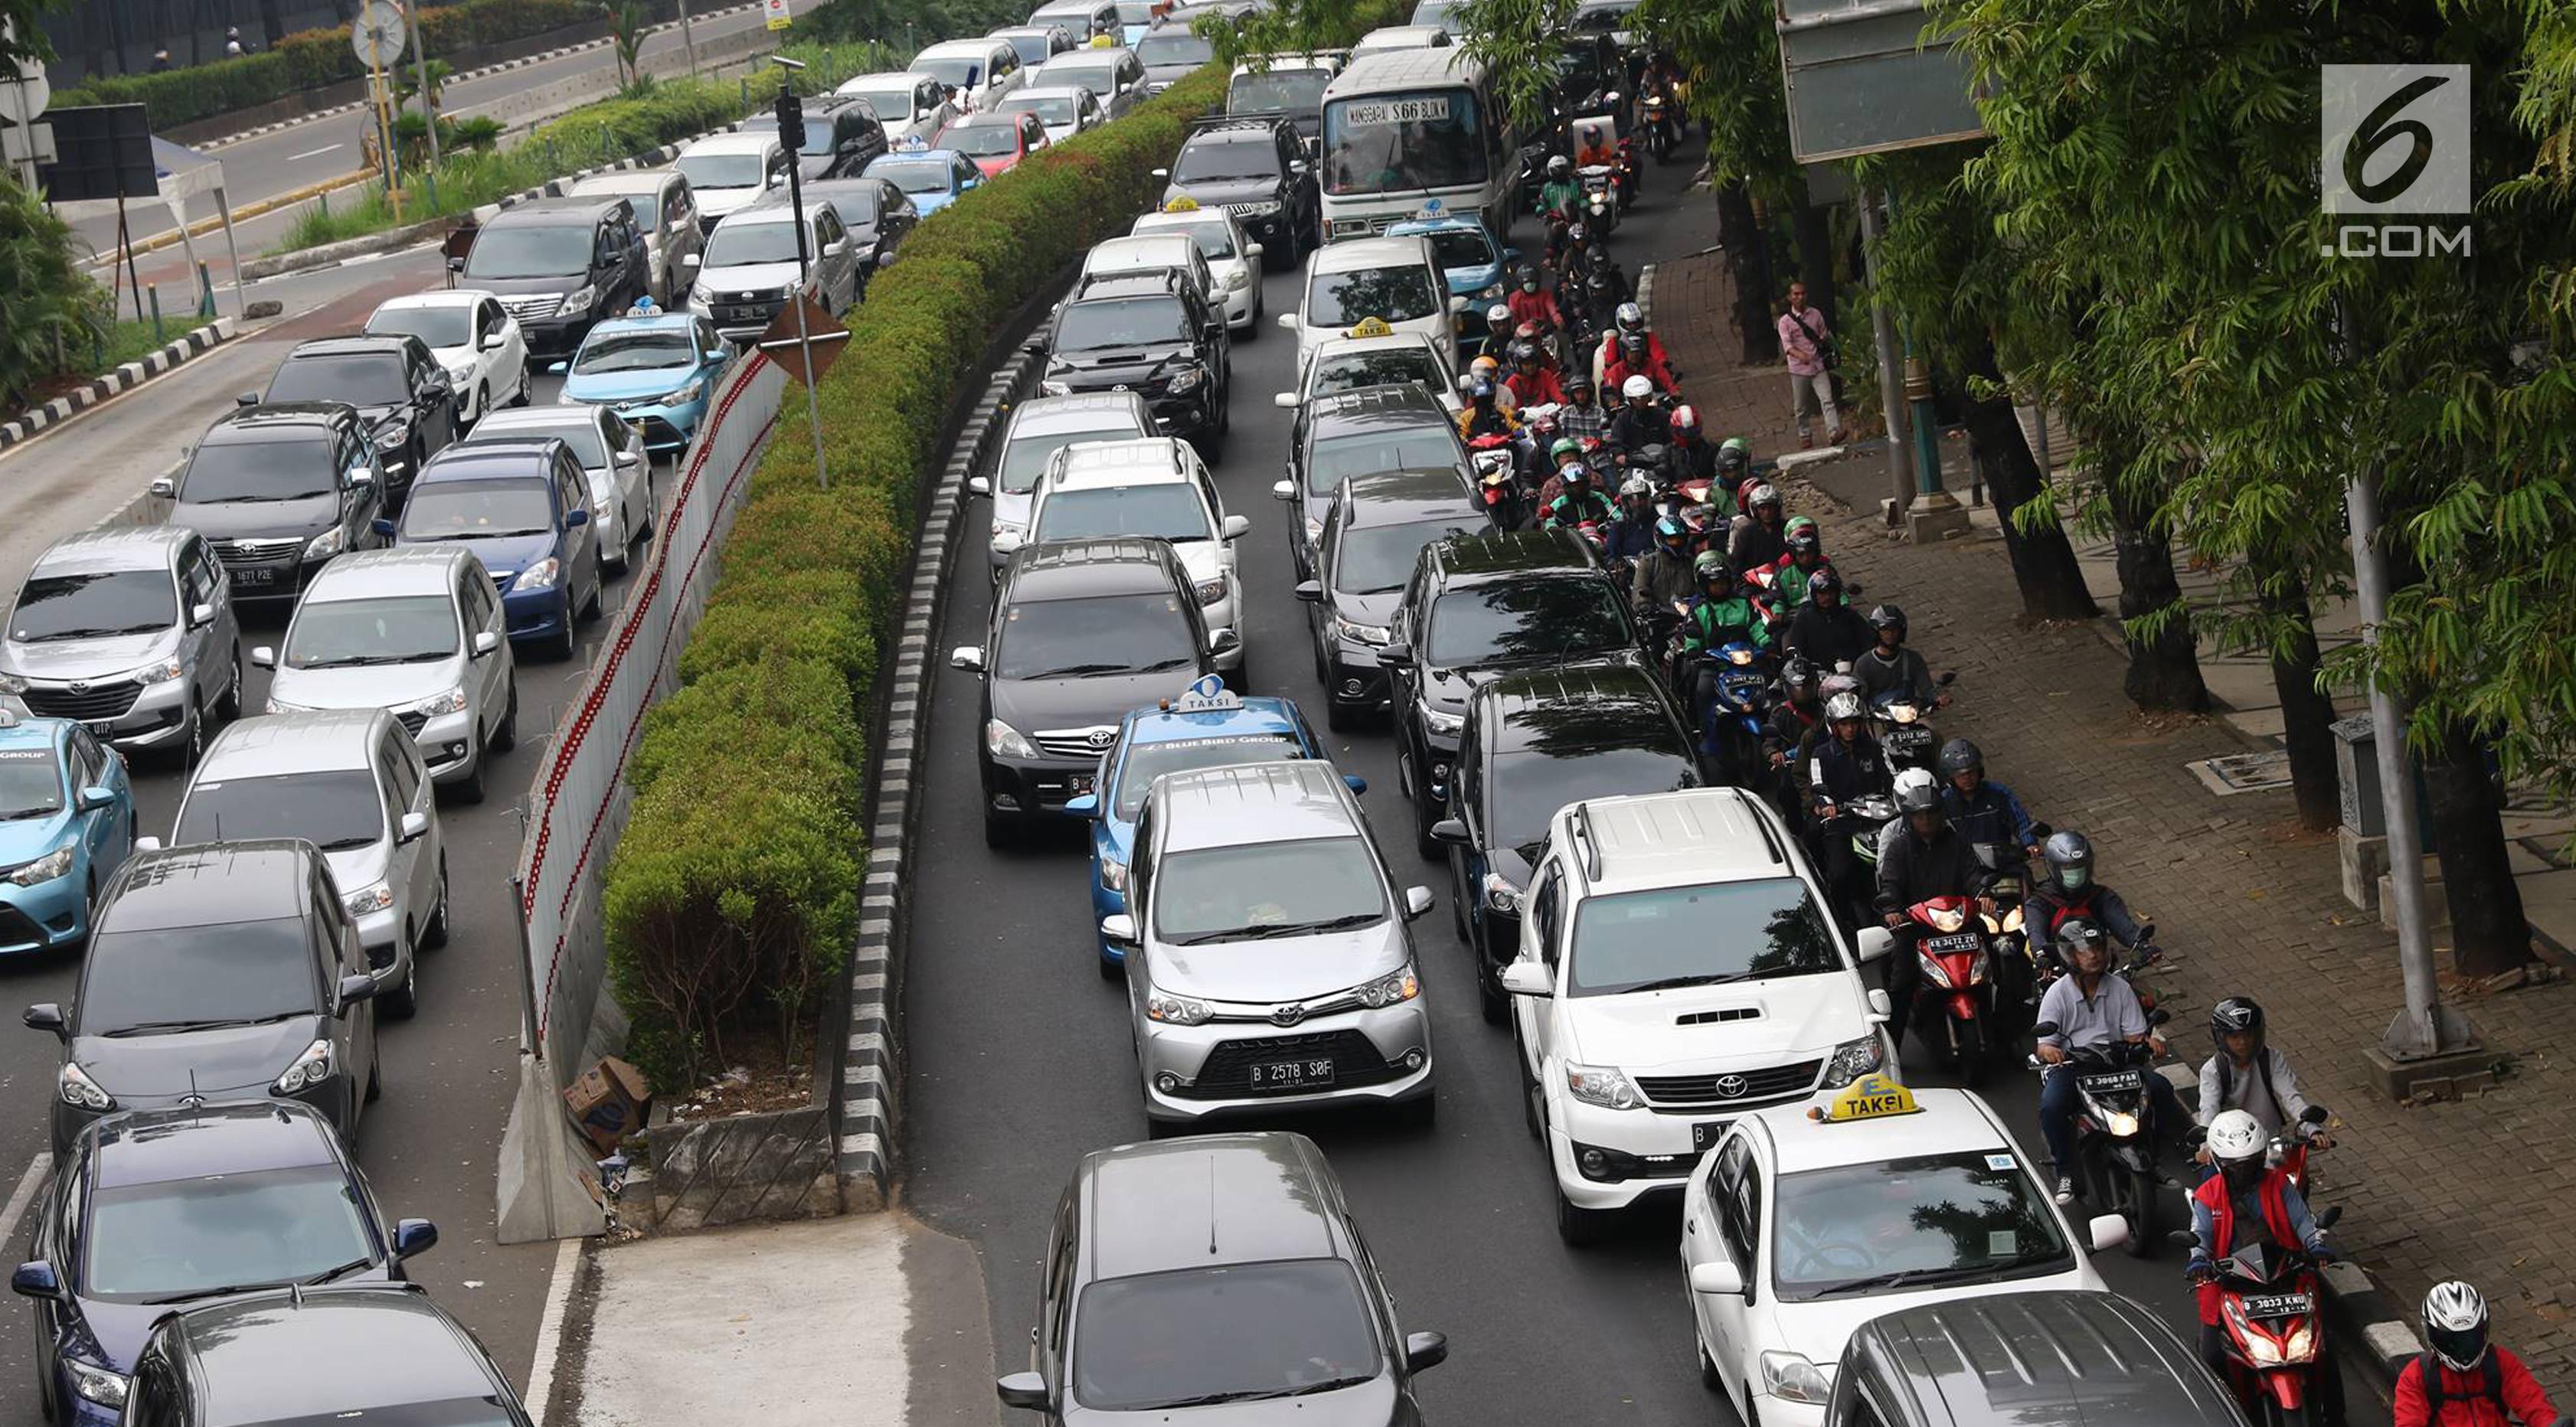  Jalan  Mana Saja Yang Tidak Boleh Dilalui Motor  Di Jakarta 